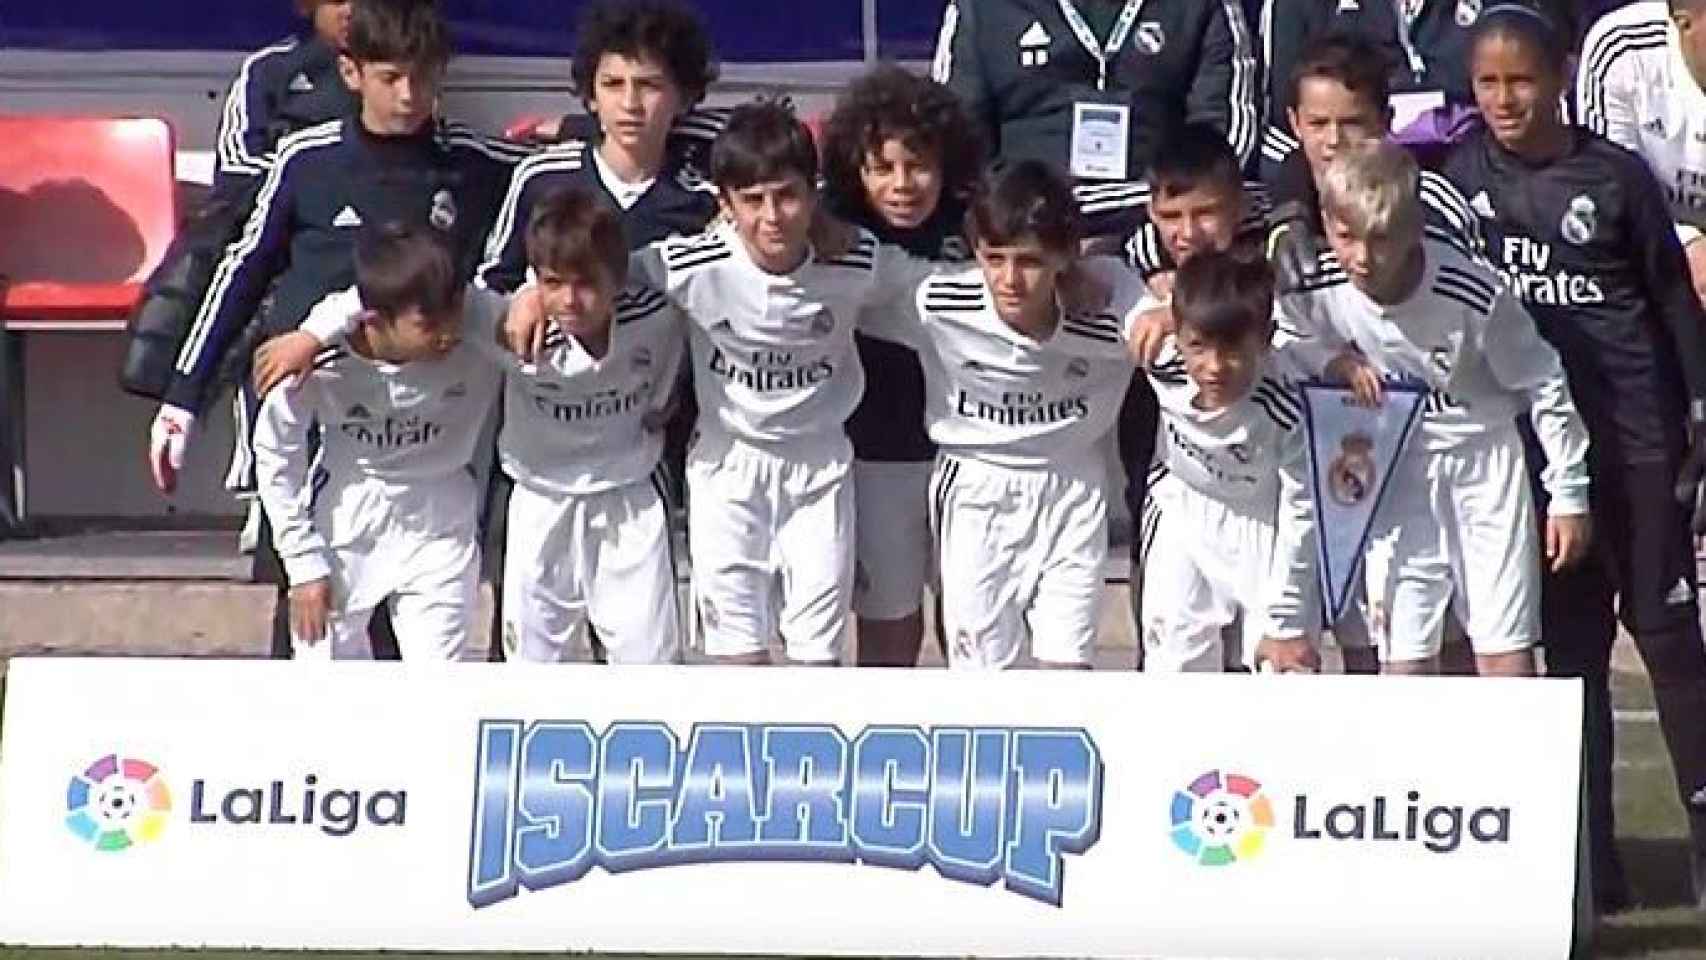 El once del Real Madrid en la IscarCup